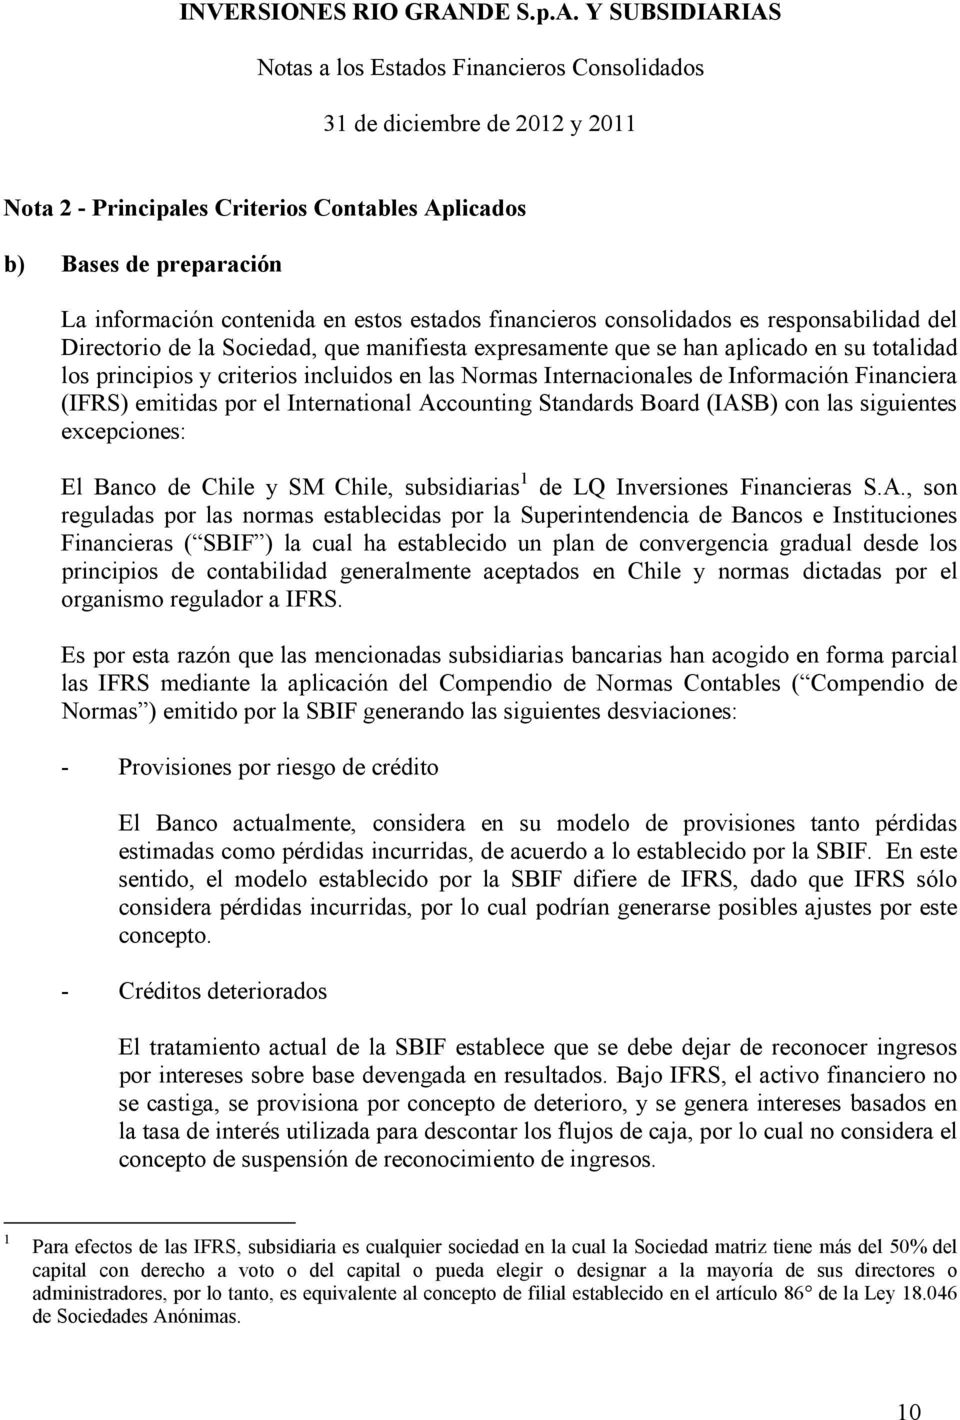 Accounting Standards Board (IASB) con las siguientes excepciones: El Banco de Chile y SM Chile, subsidiarias 1 de LQ Inversiones Financieras S.A., son reguladas por las normas establecidas por la